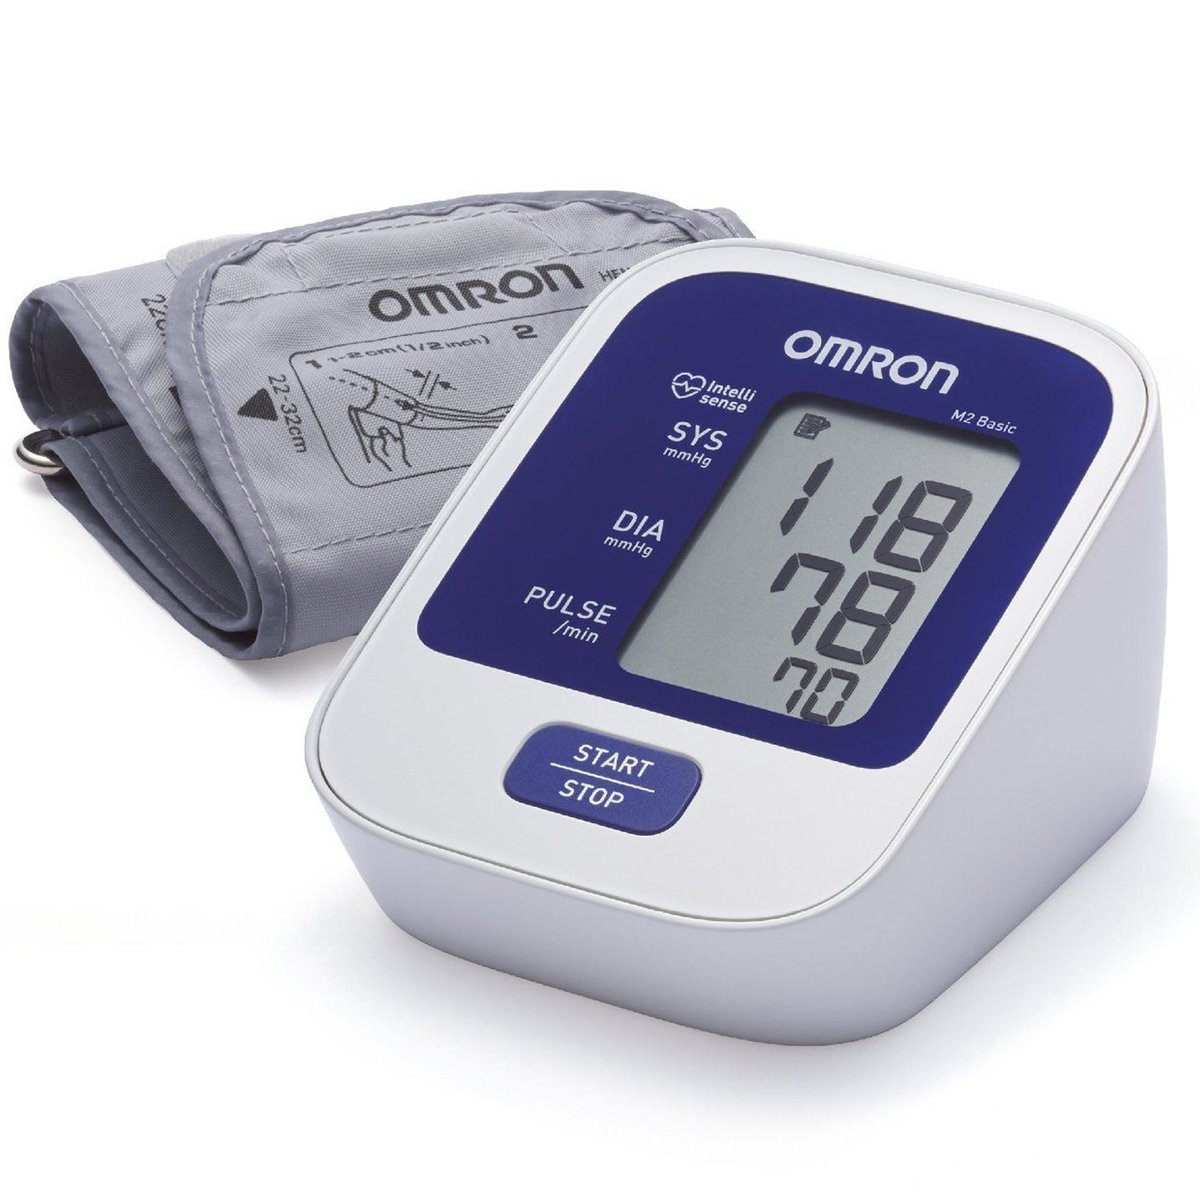 Omron Blood Pressure Monitor M2 Basic + I Health Tracker Edge